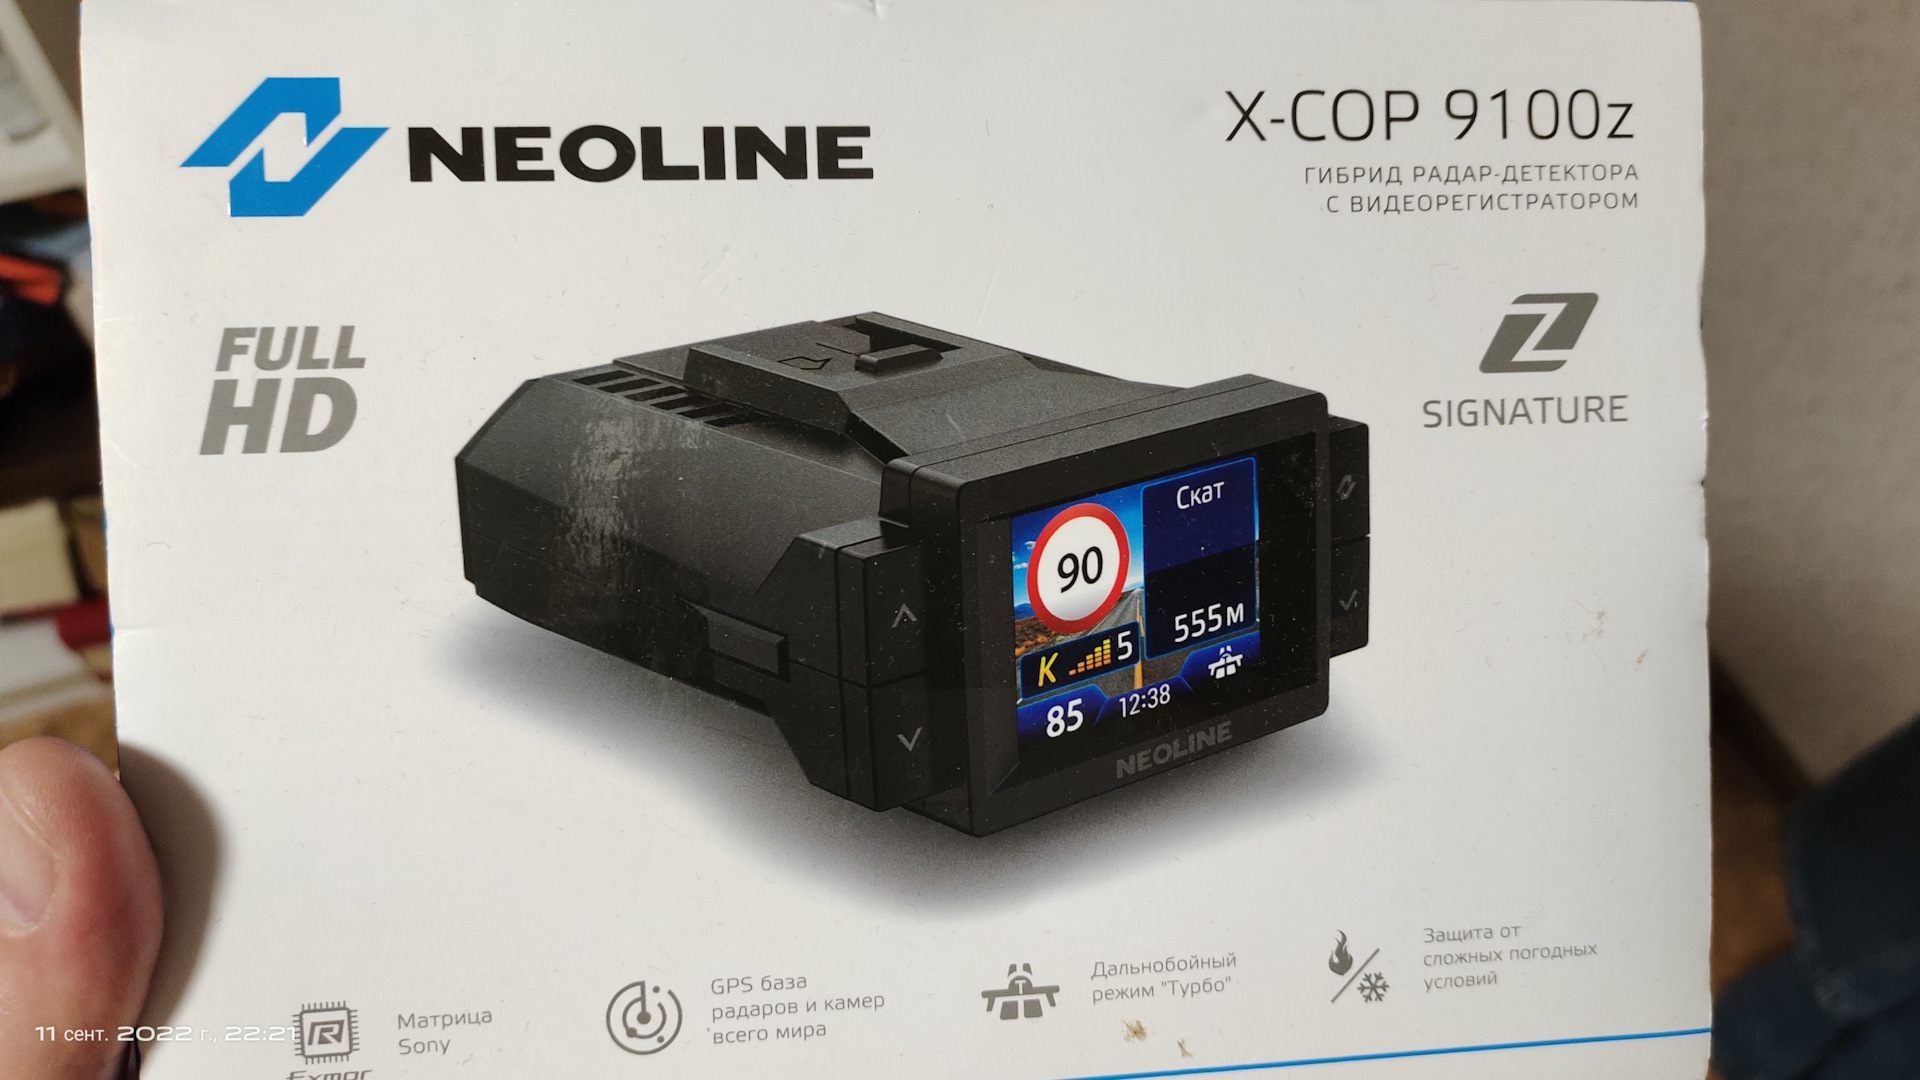 Neoline x cop 9100c. X-cop 9100. Neoline x-cop 9100. Neoline x-cop 9100z. Видеорегистратор Neoline x-cop 9100s.